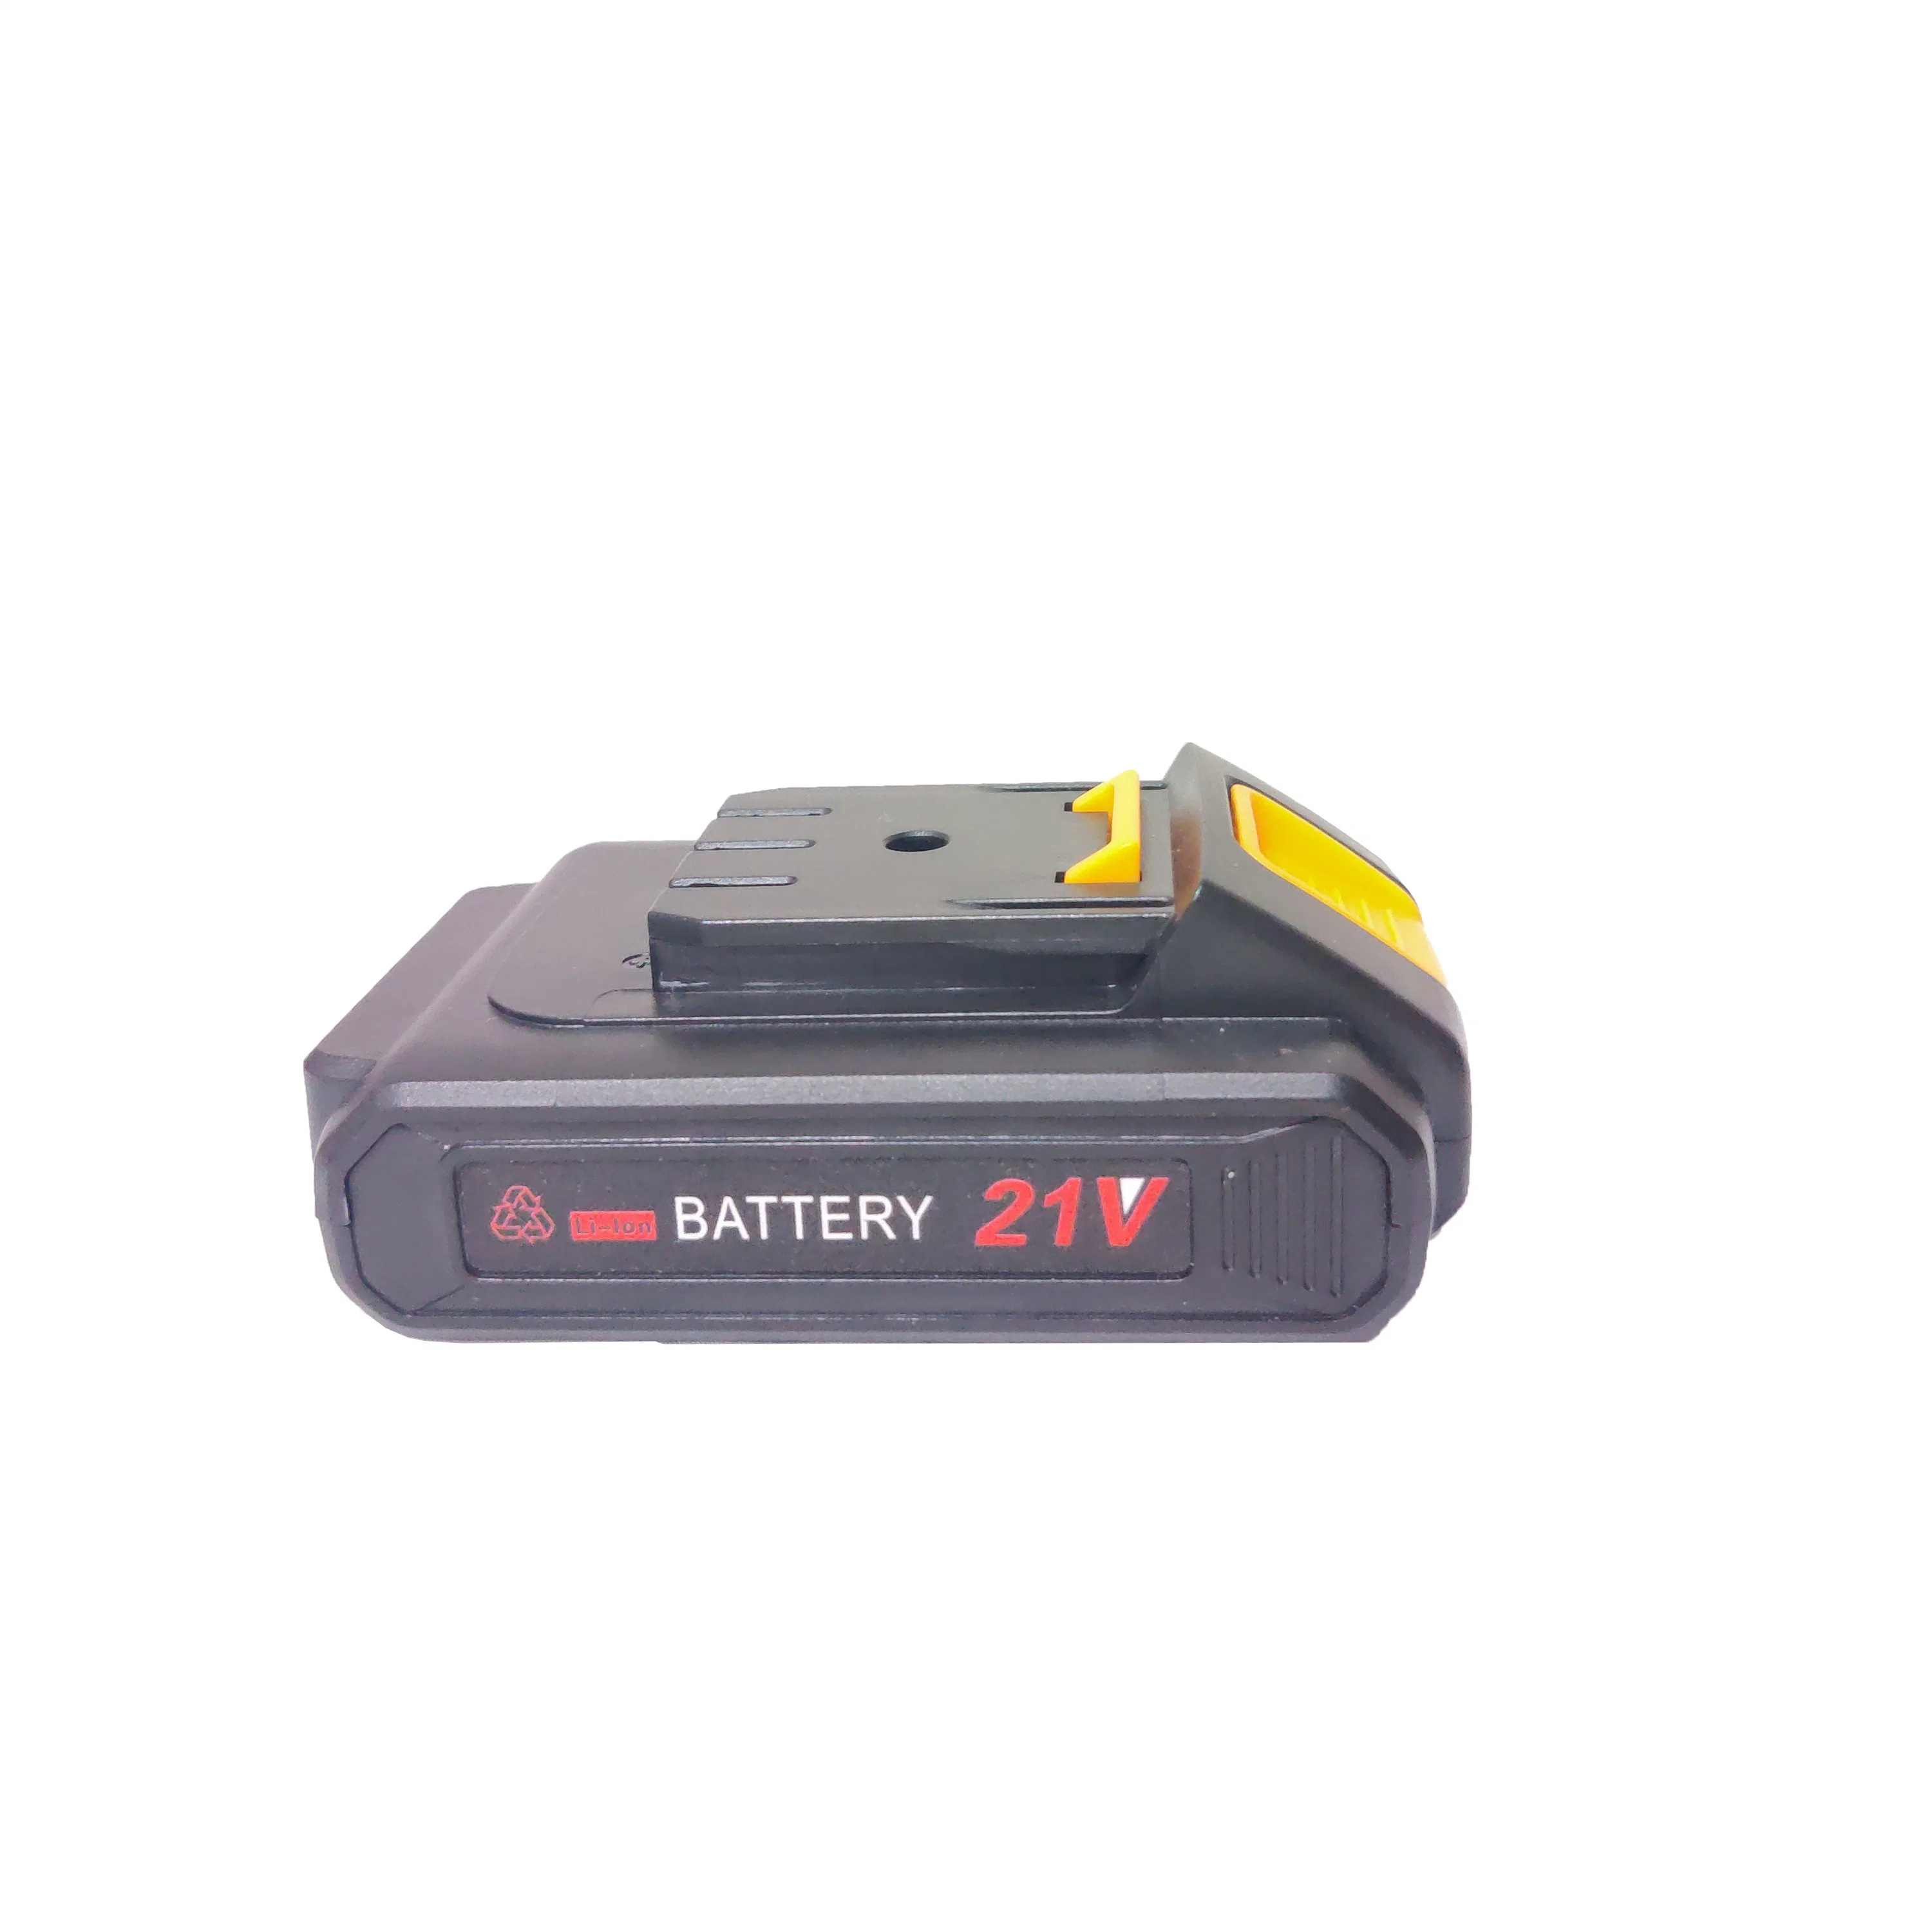 Ferramentas eléctricas profissionais Youwe Baterias de Lítio Recarregável Preto portátil 21V Bateria de Lítio 3.0Ah